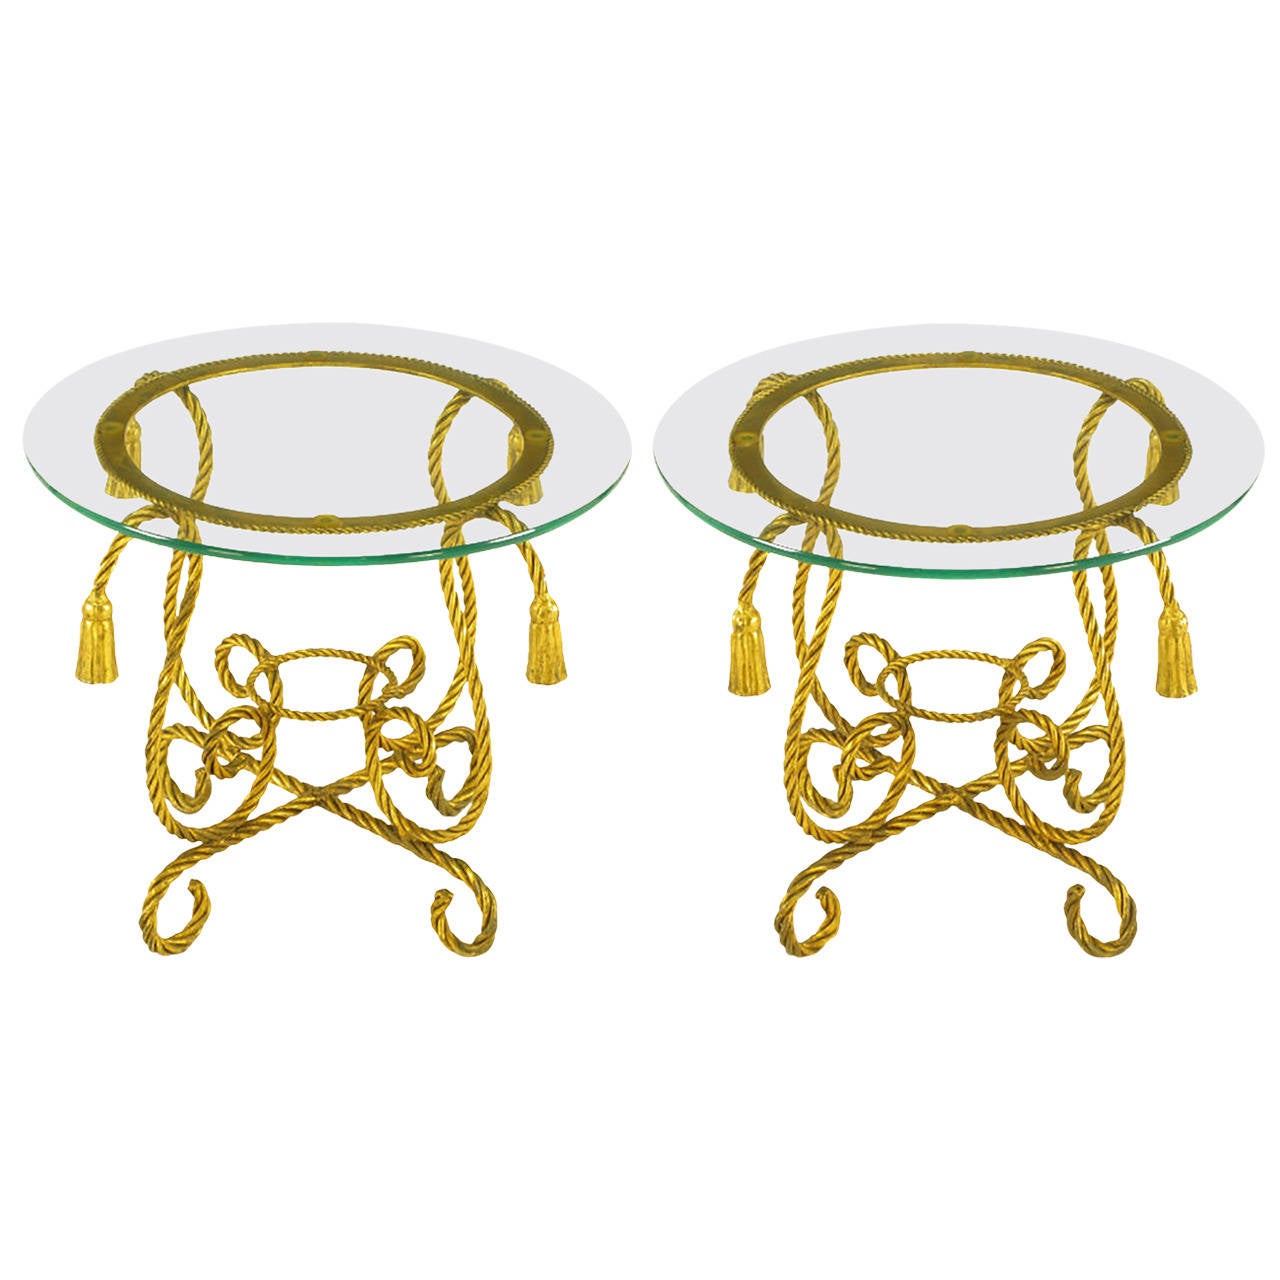 Paire de tables italiennes en corde de fer doré avec ornementation de glands